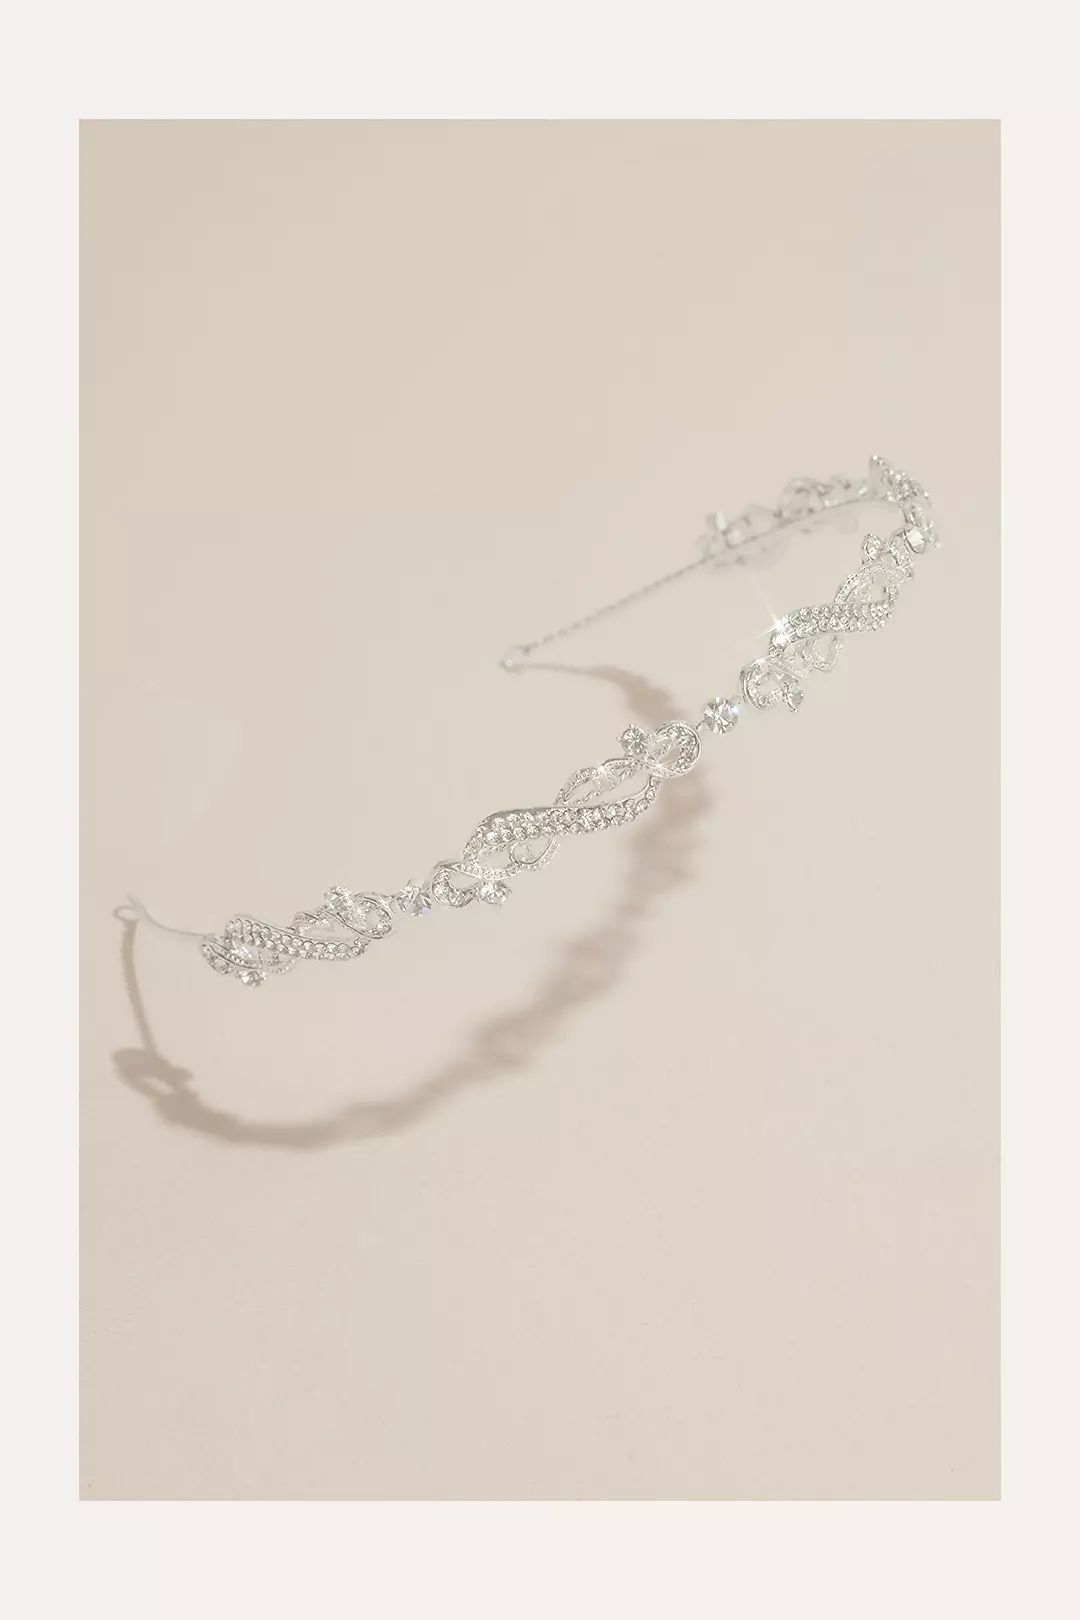 Twisting Rhinestone-Embellished Headband Image